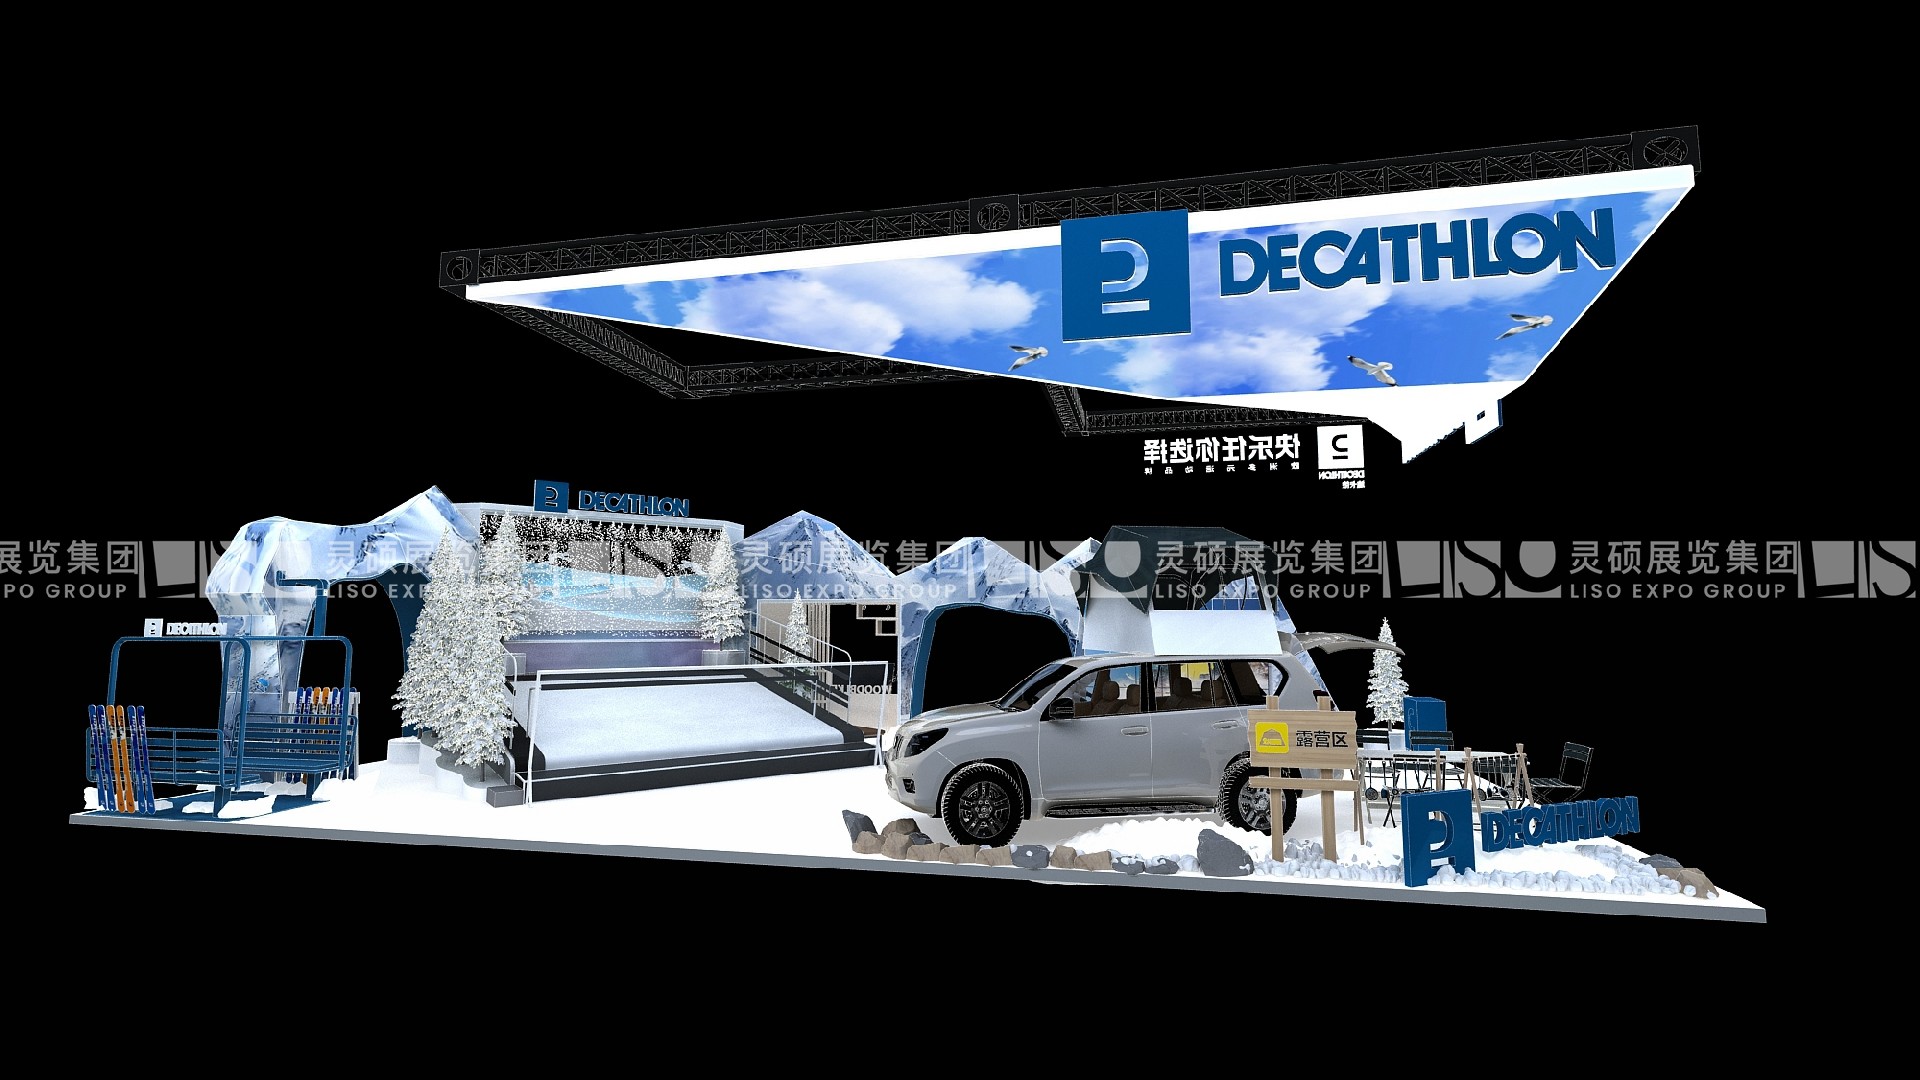 Decathlon- CIIE Booth Design Case